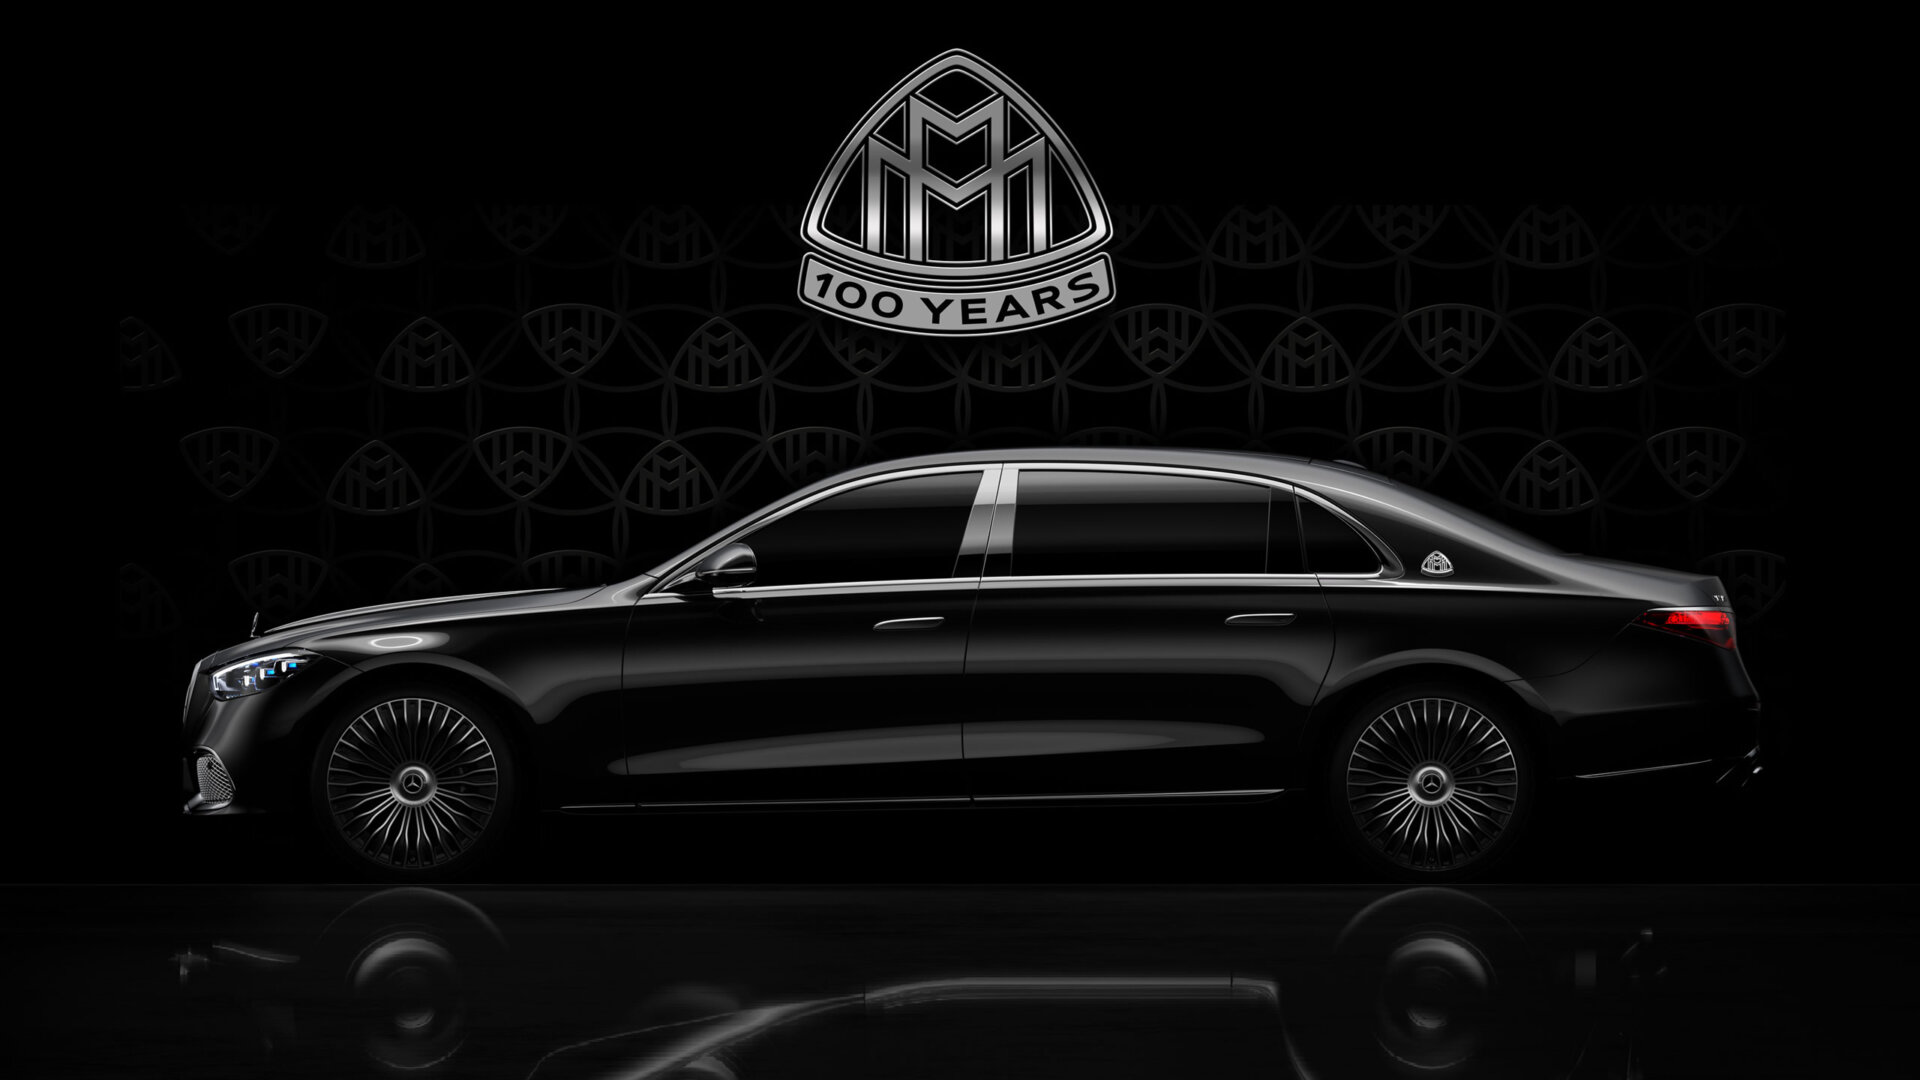 O 100 rokov neskôr – Prečo je Mercedes-Maybach stelesnením maximálneho luxusu a kreatívnej sily